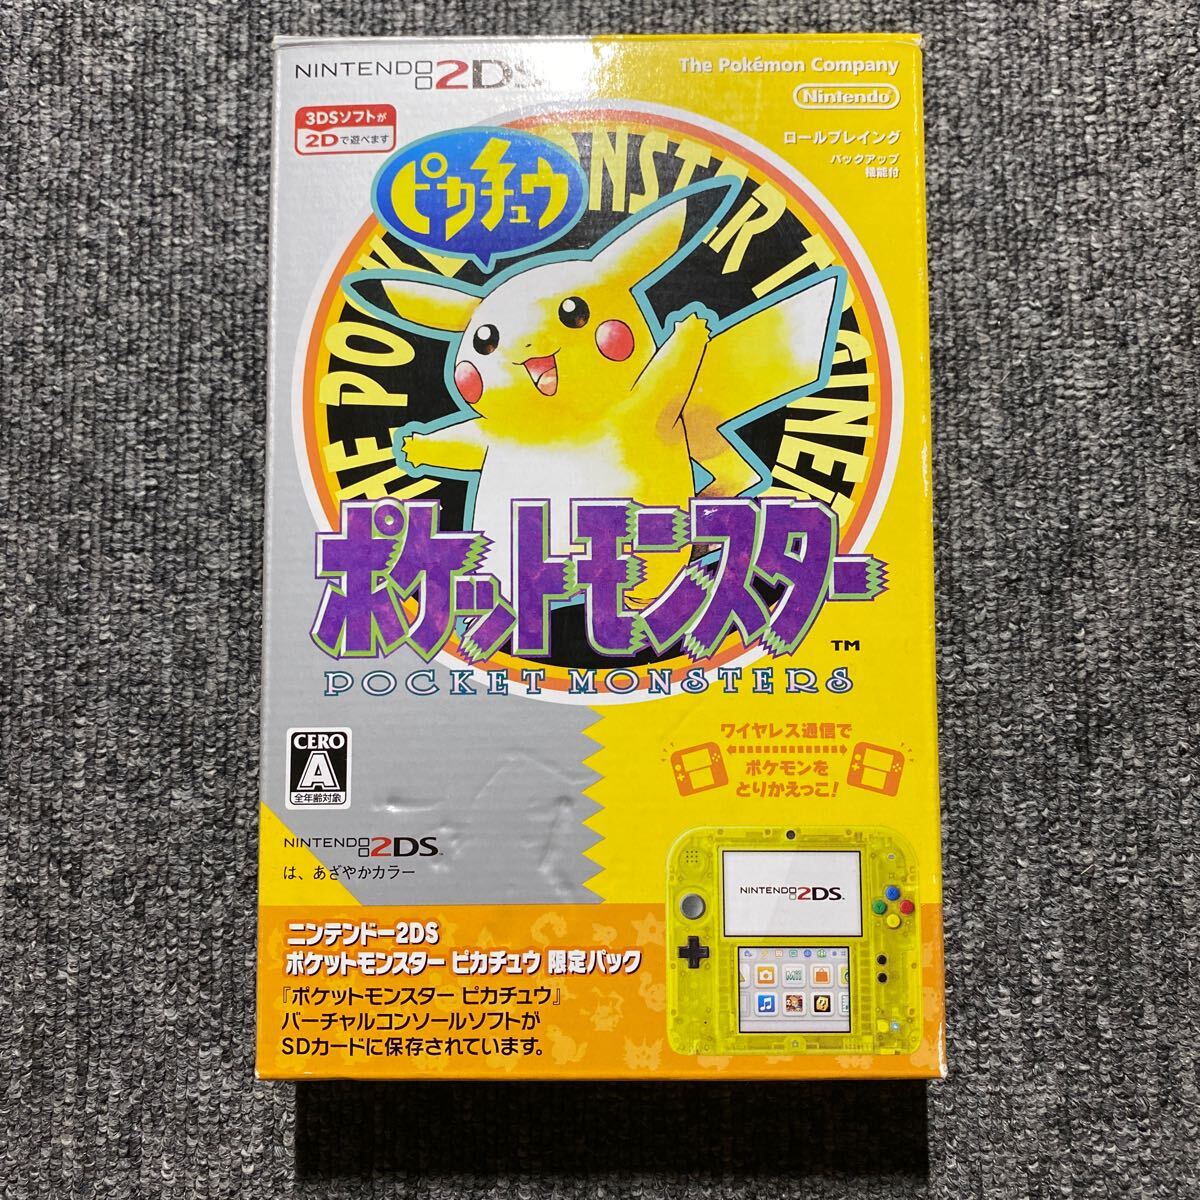  Nintendo 2DS Pocket Monster Пикачу ограничение упаковка 